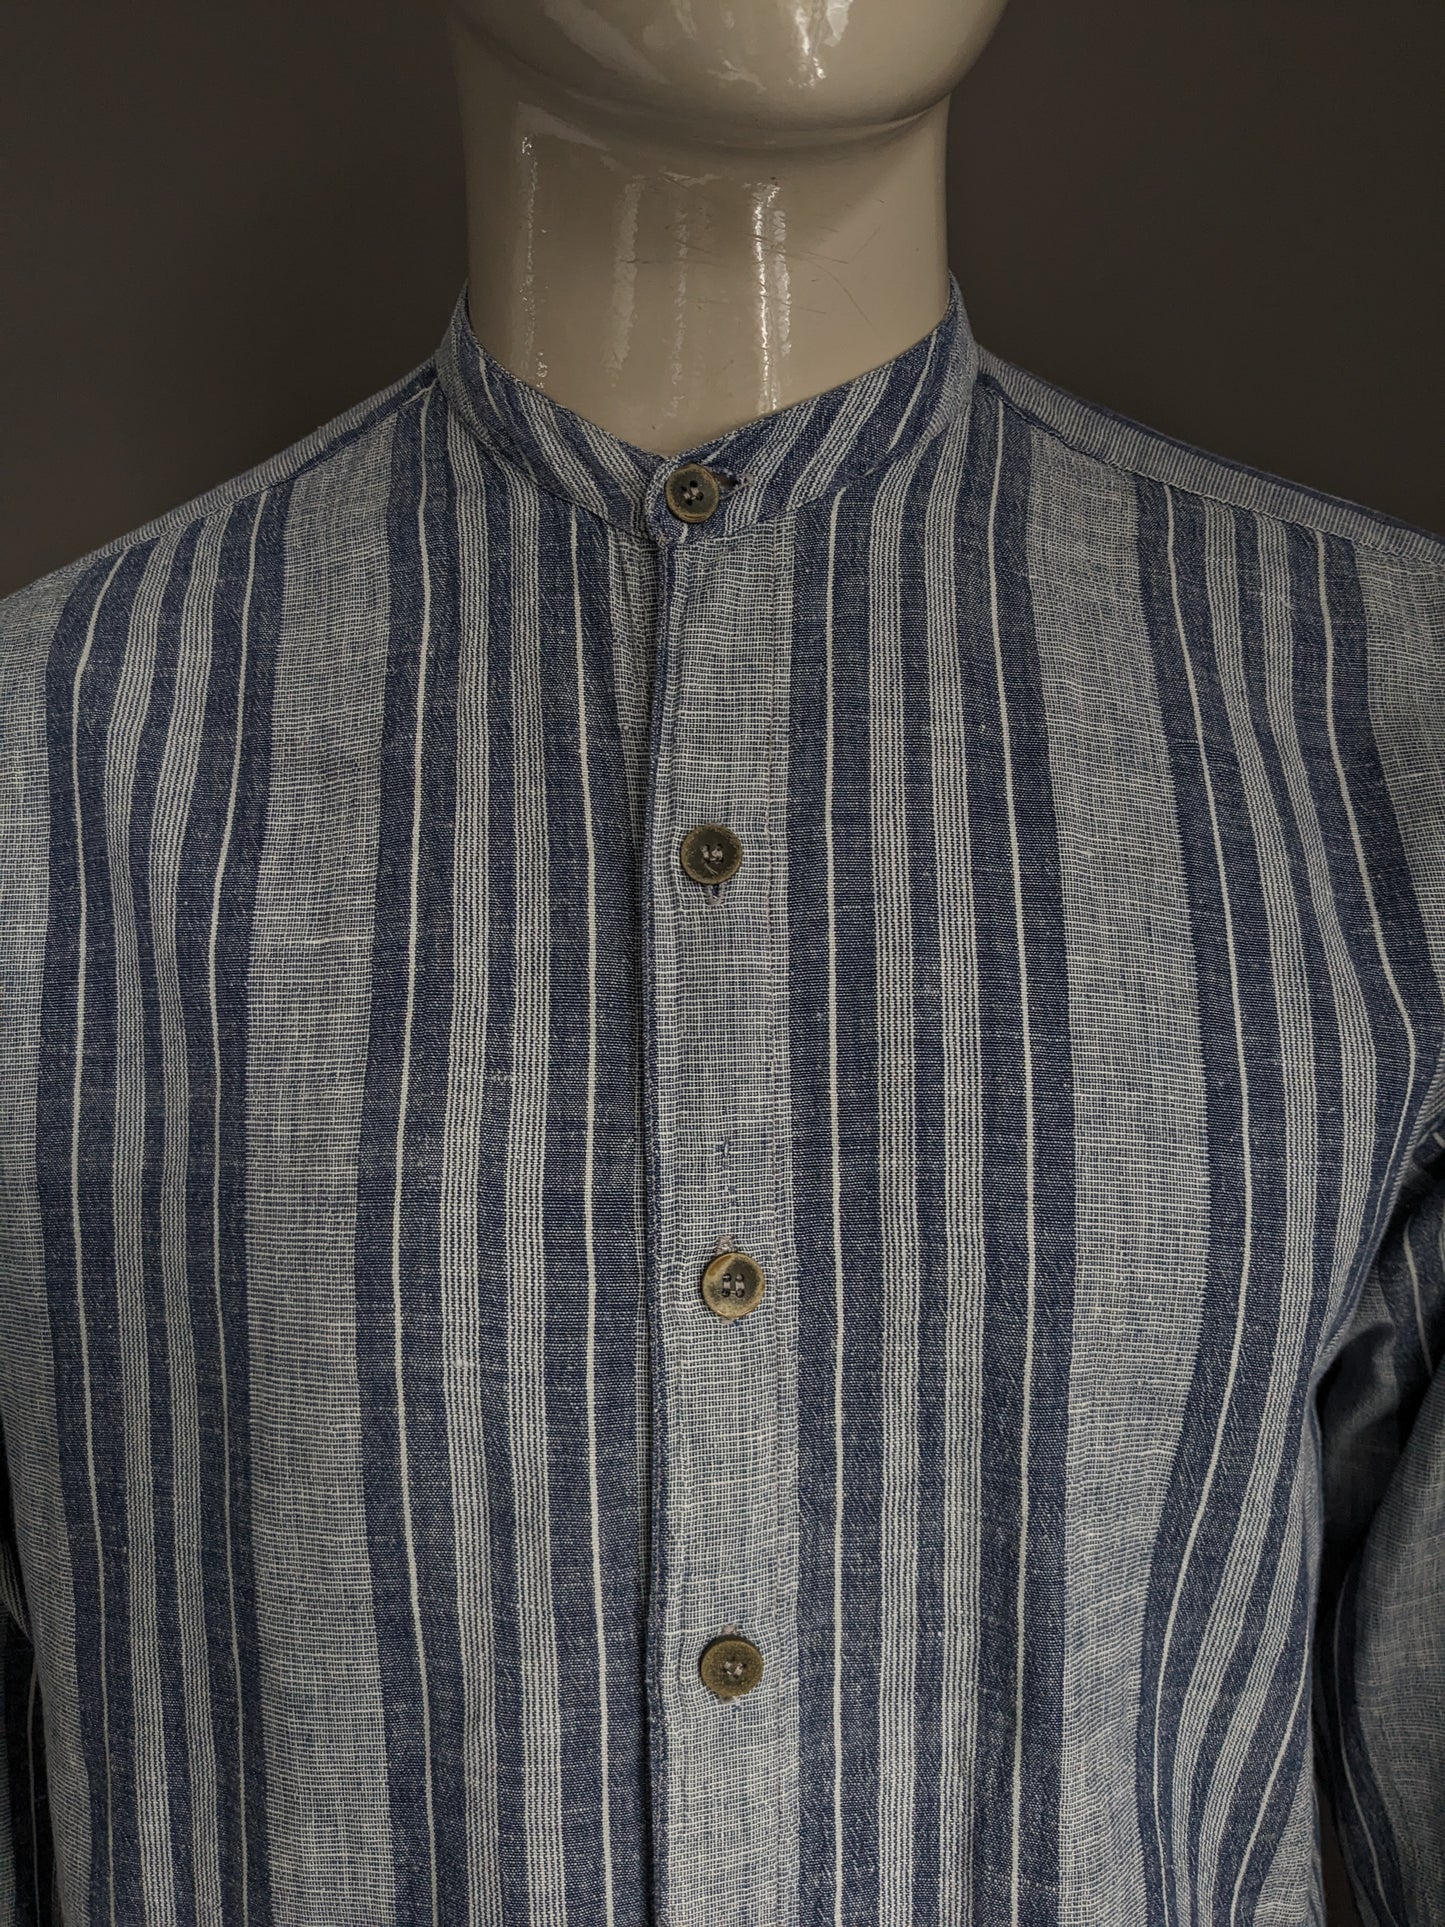 Chemise Casa Blanca vintage / Farmers / MAO Collar. Gris bleu rayé. Taille xl.